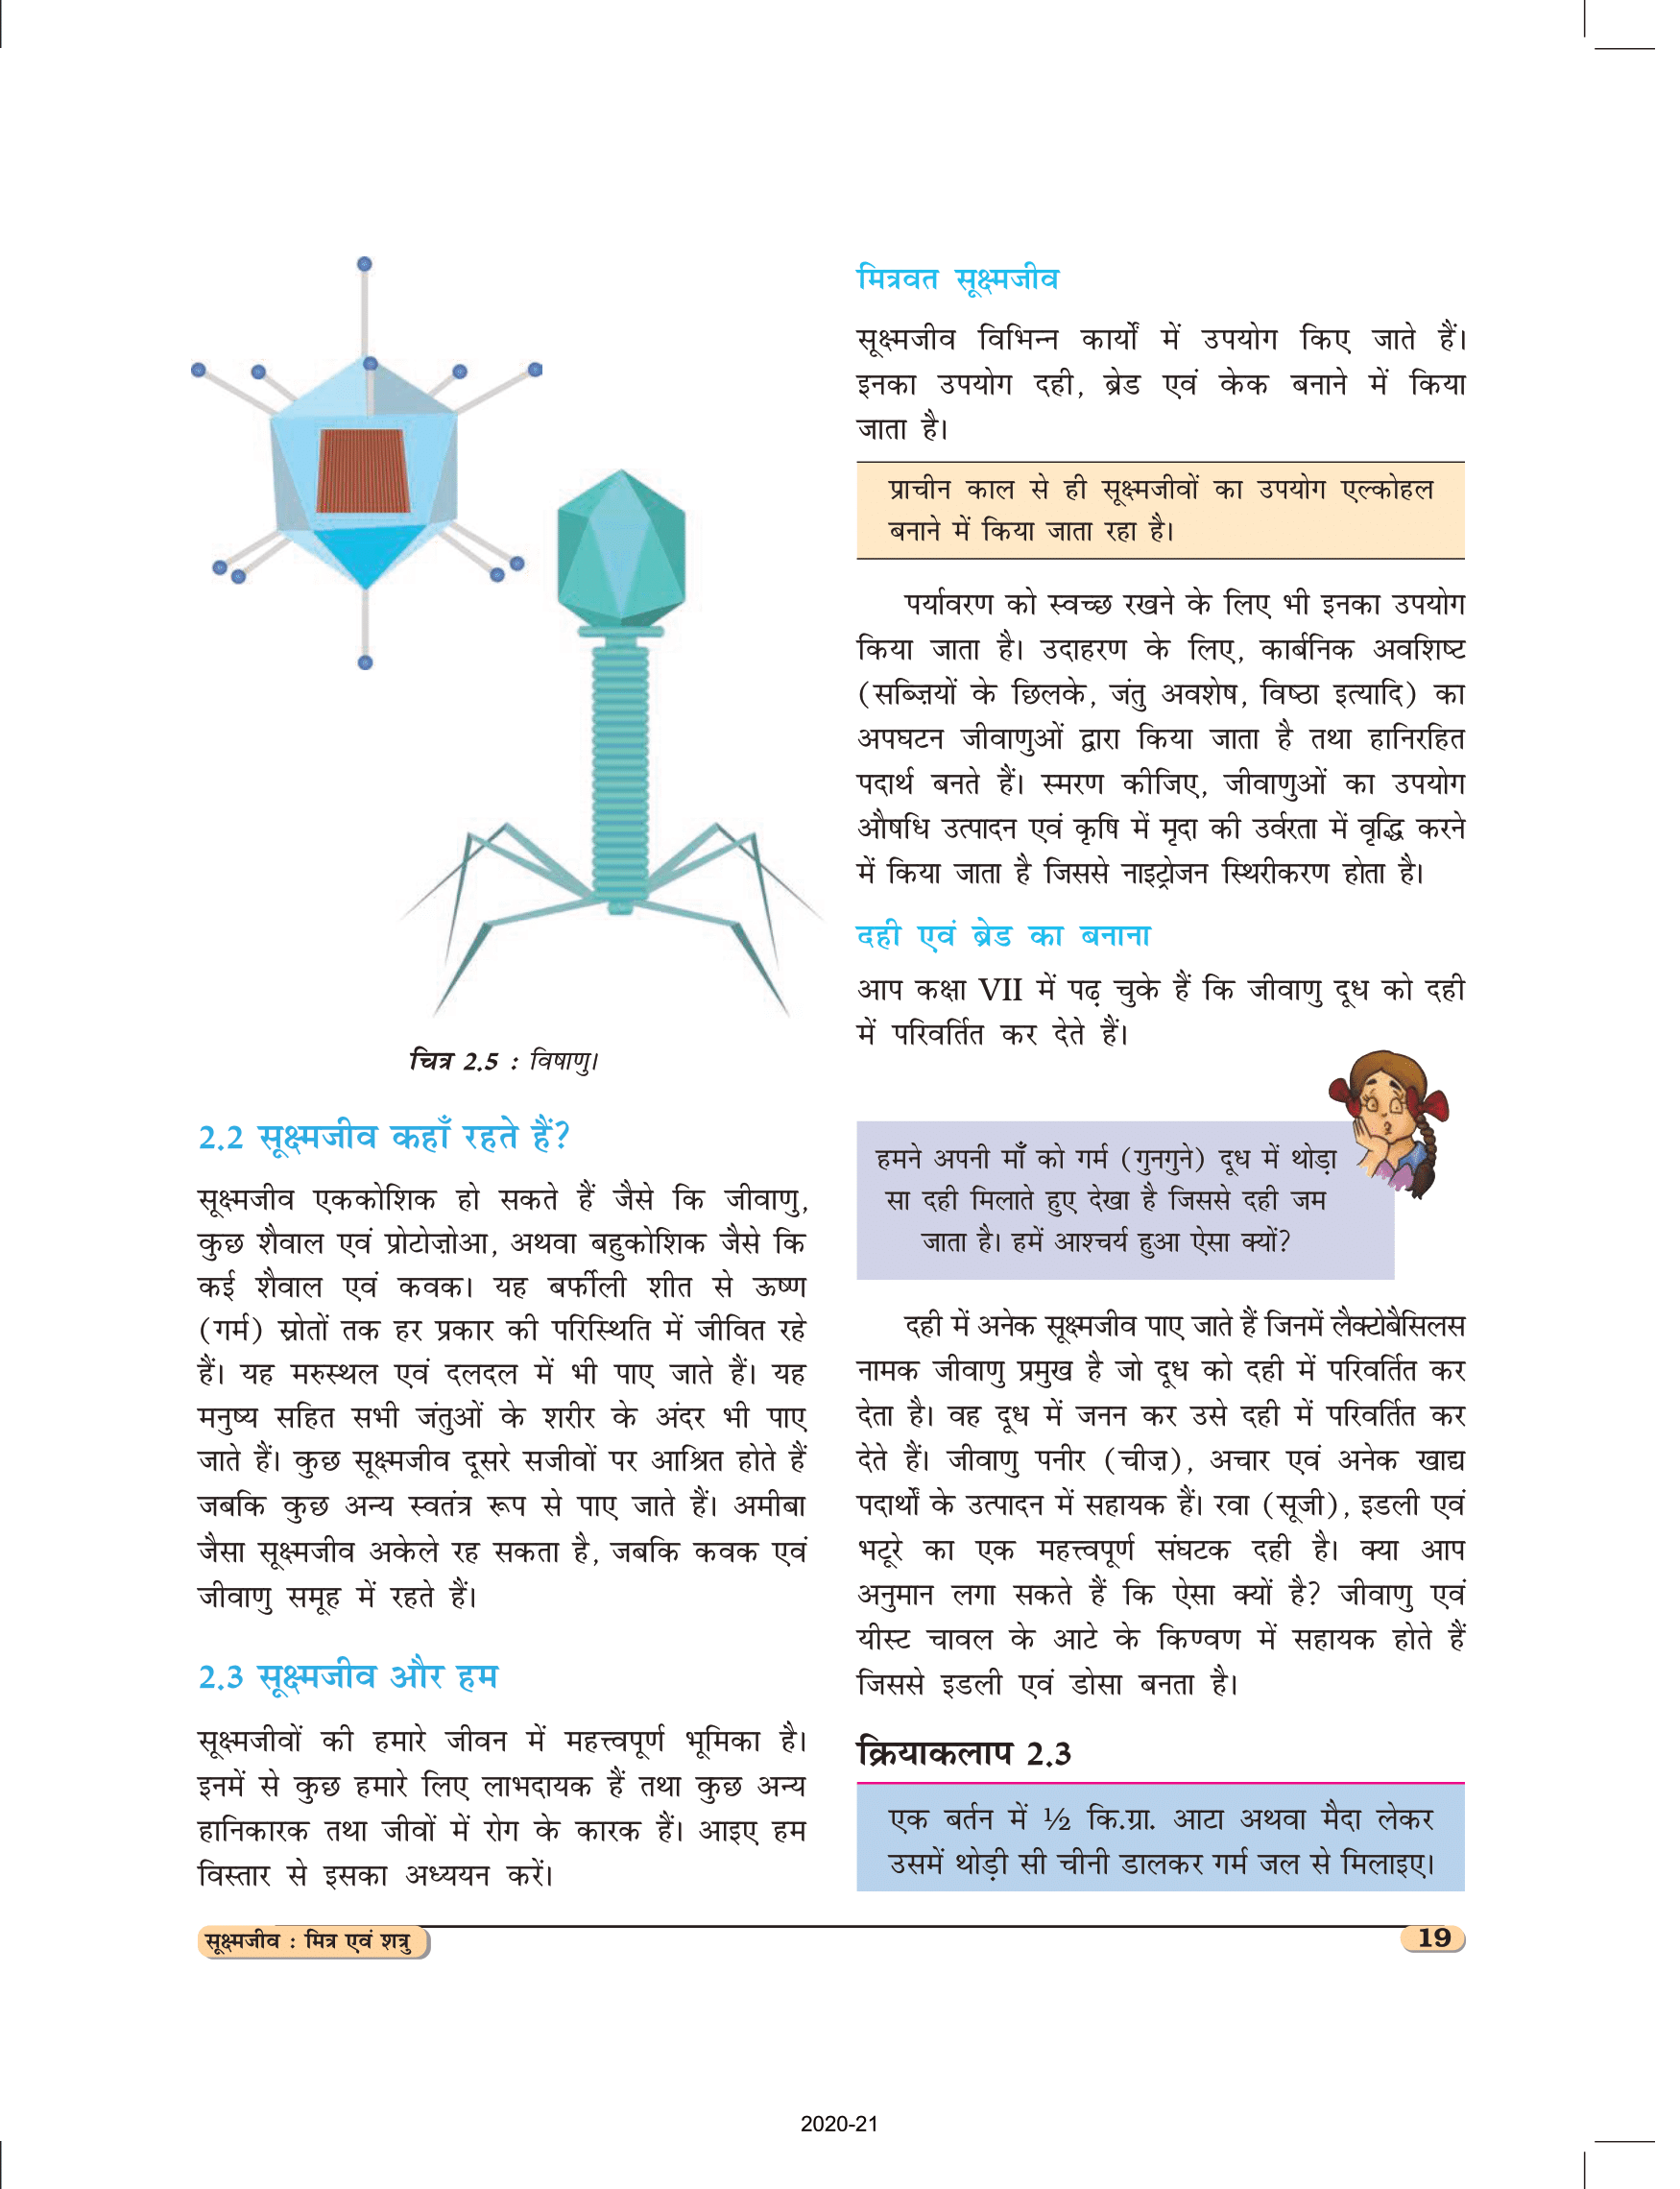 कक्षा 8 विज्ञान अध्याय 2 किताब